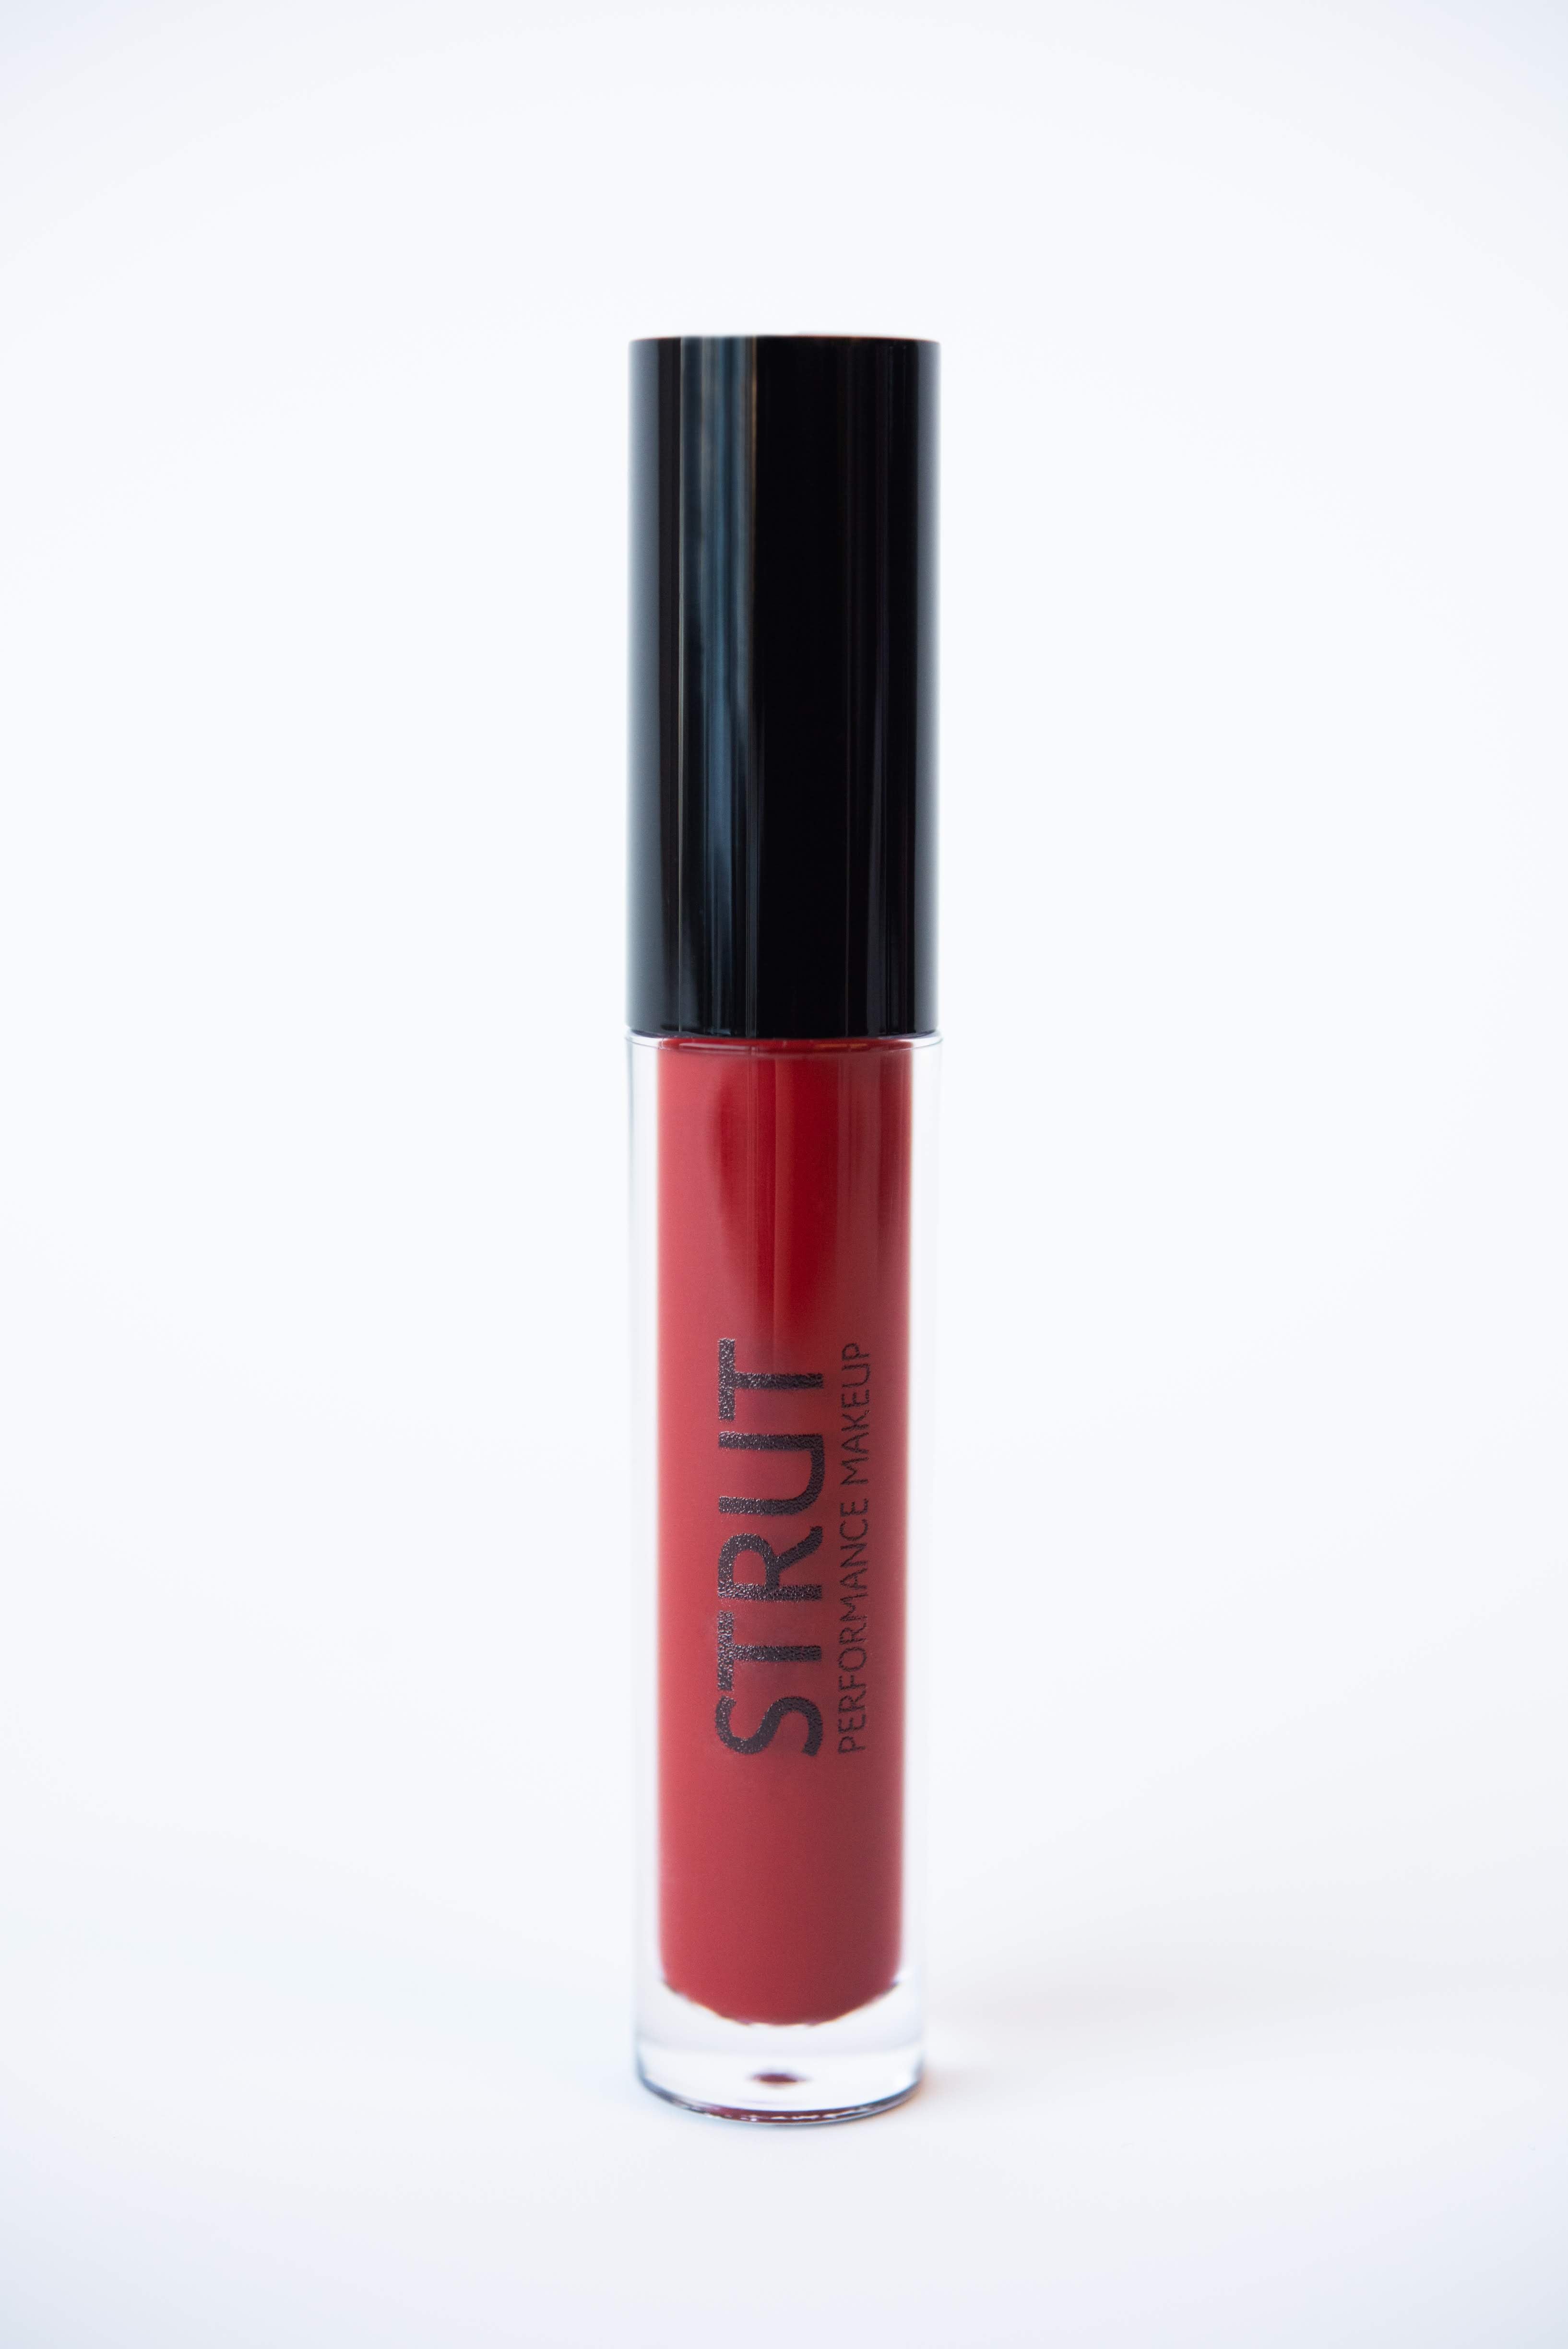 FS44 Strut Makeup Matte Liquid Lipstick